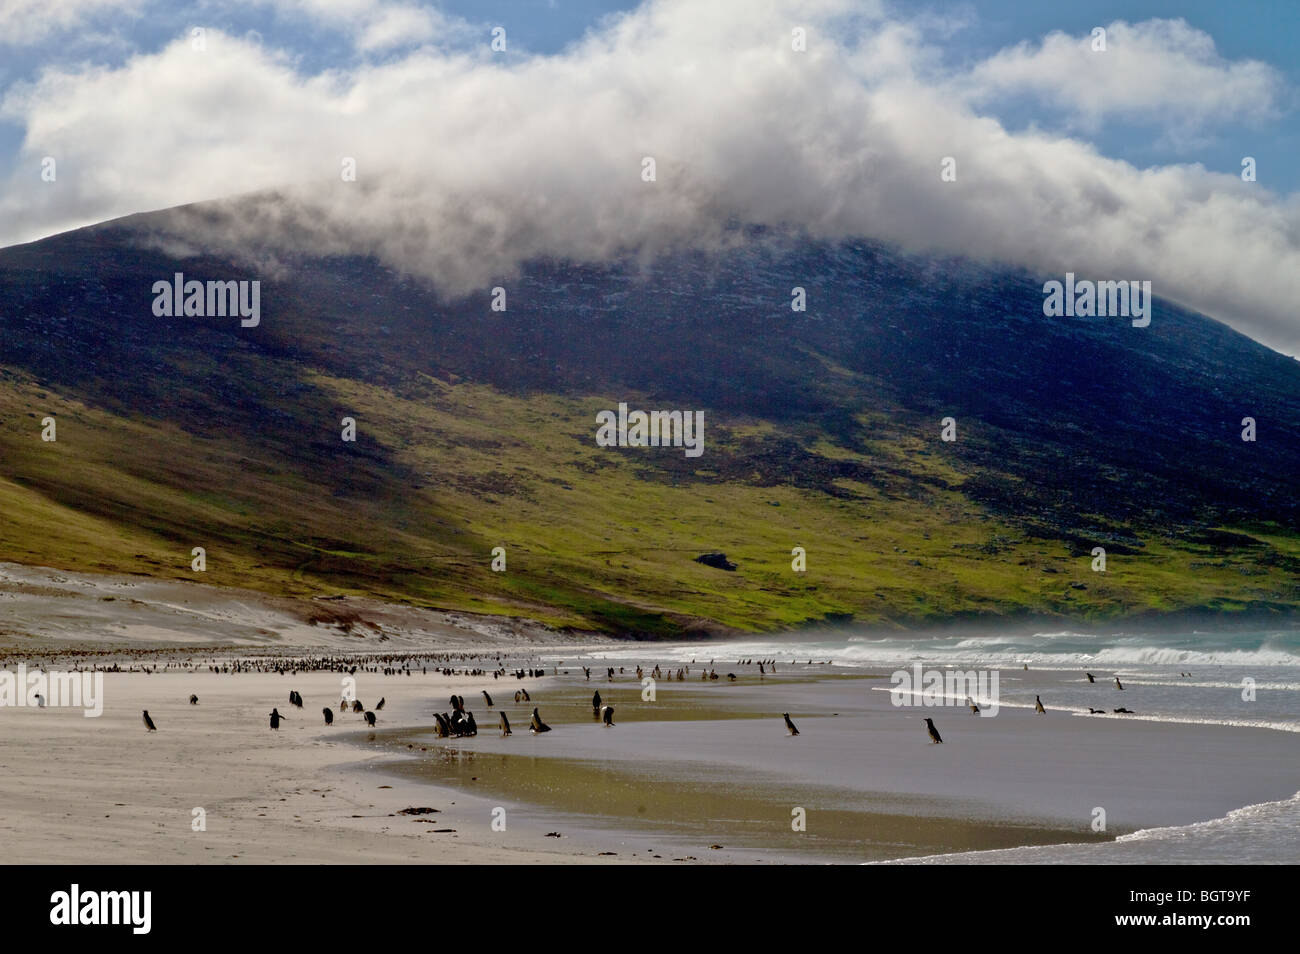 Et manchots de Magellan sur la plage à l'Île Saunders, îles Falkland (Îles Malvinas) Banque D'Images